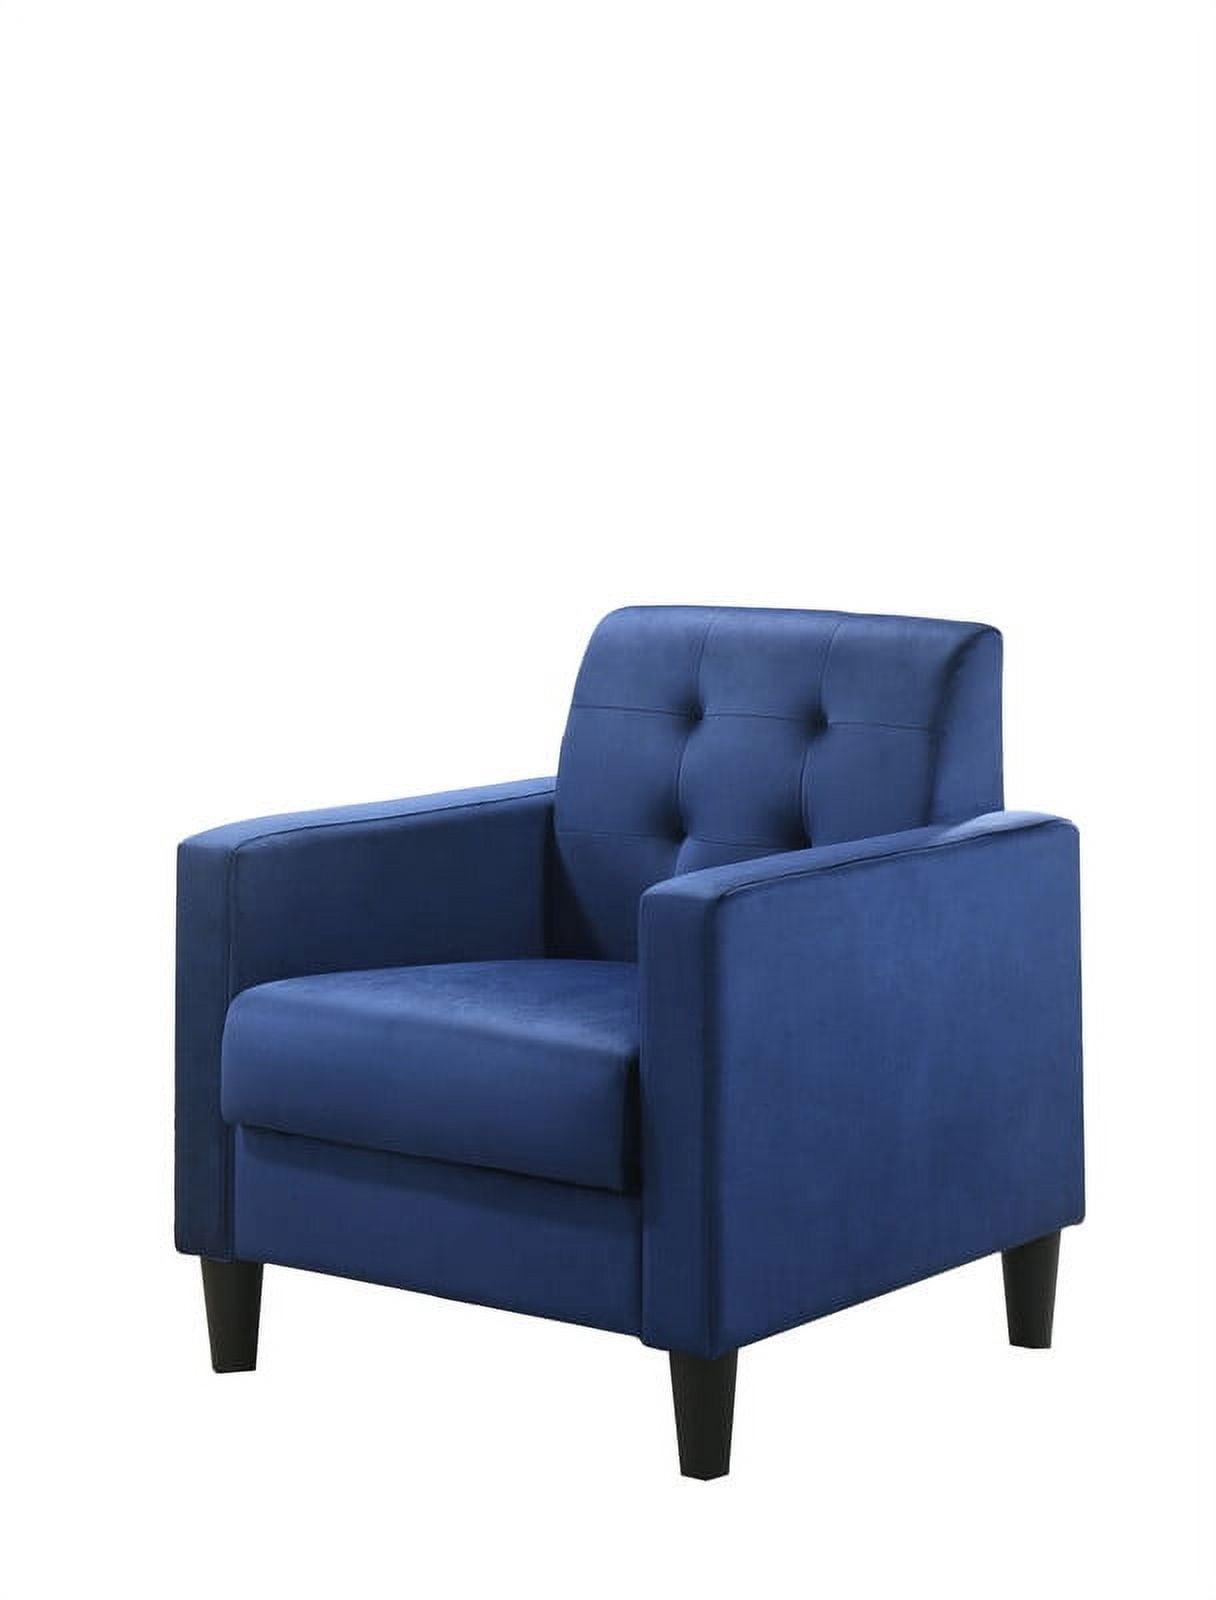 Hale Plush Blue Velvet Tufted Square Arm Accent Chair